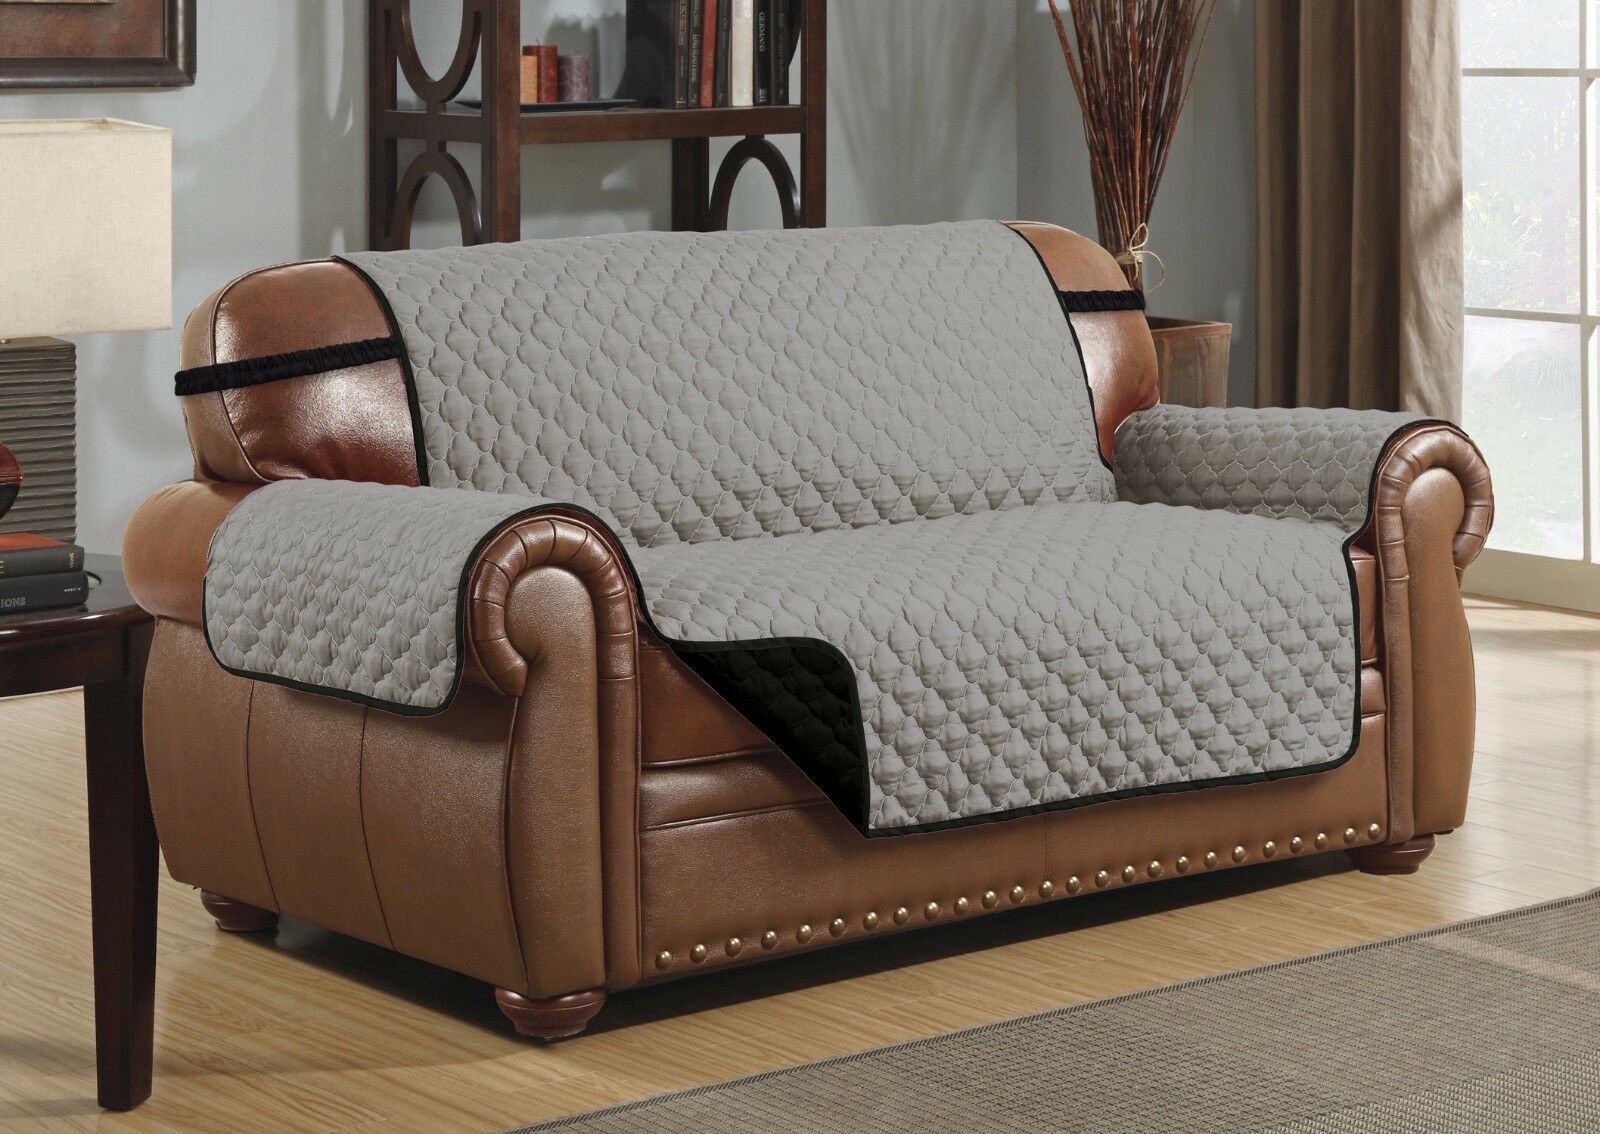 Плед на диван: фото для угловых, кожаных видов. искусственные или натуральные модели